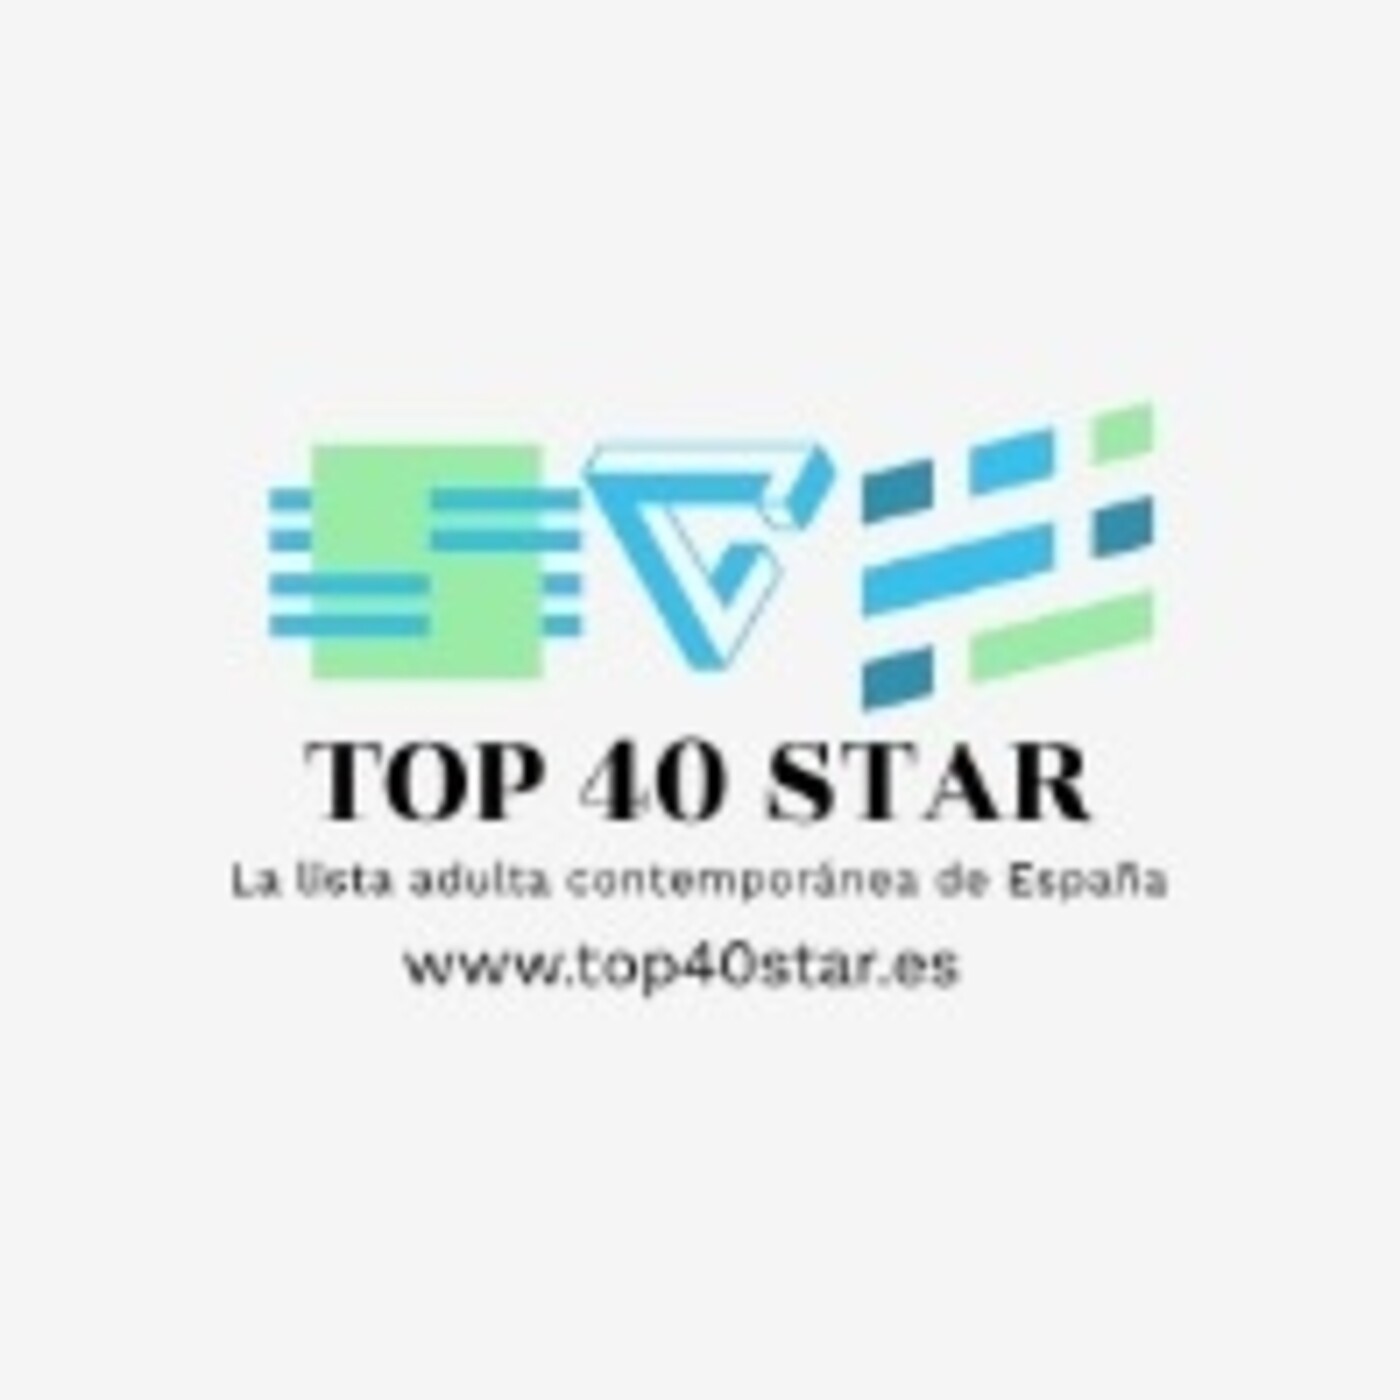 TOP 40 STAR. Lista adulta contemporánea de España